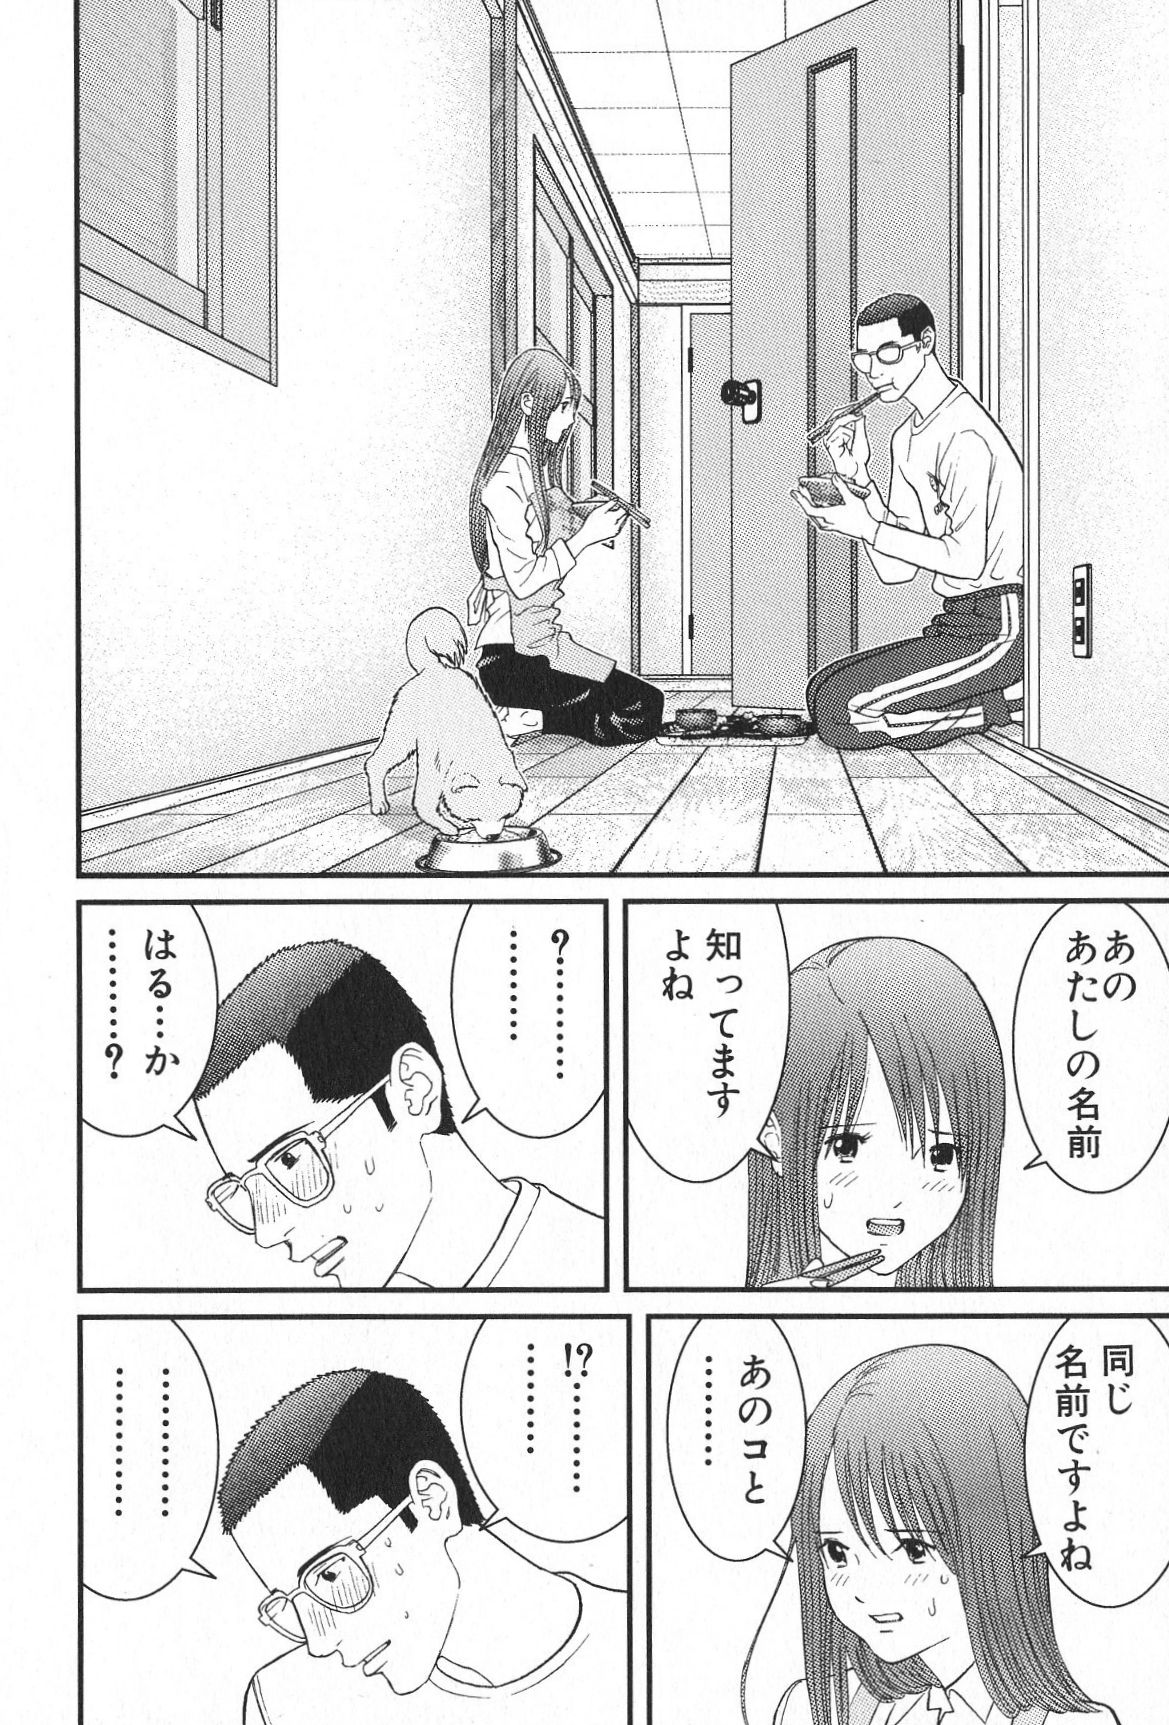 [Oku Hiroya] Me teru no kimochi (Vol. 2) [奥浩哉] め～てるの気持ち(2)